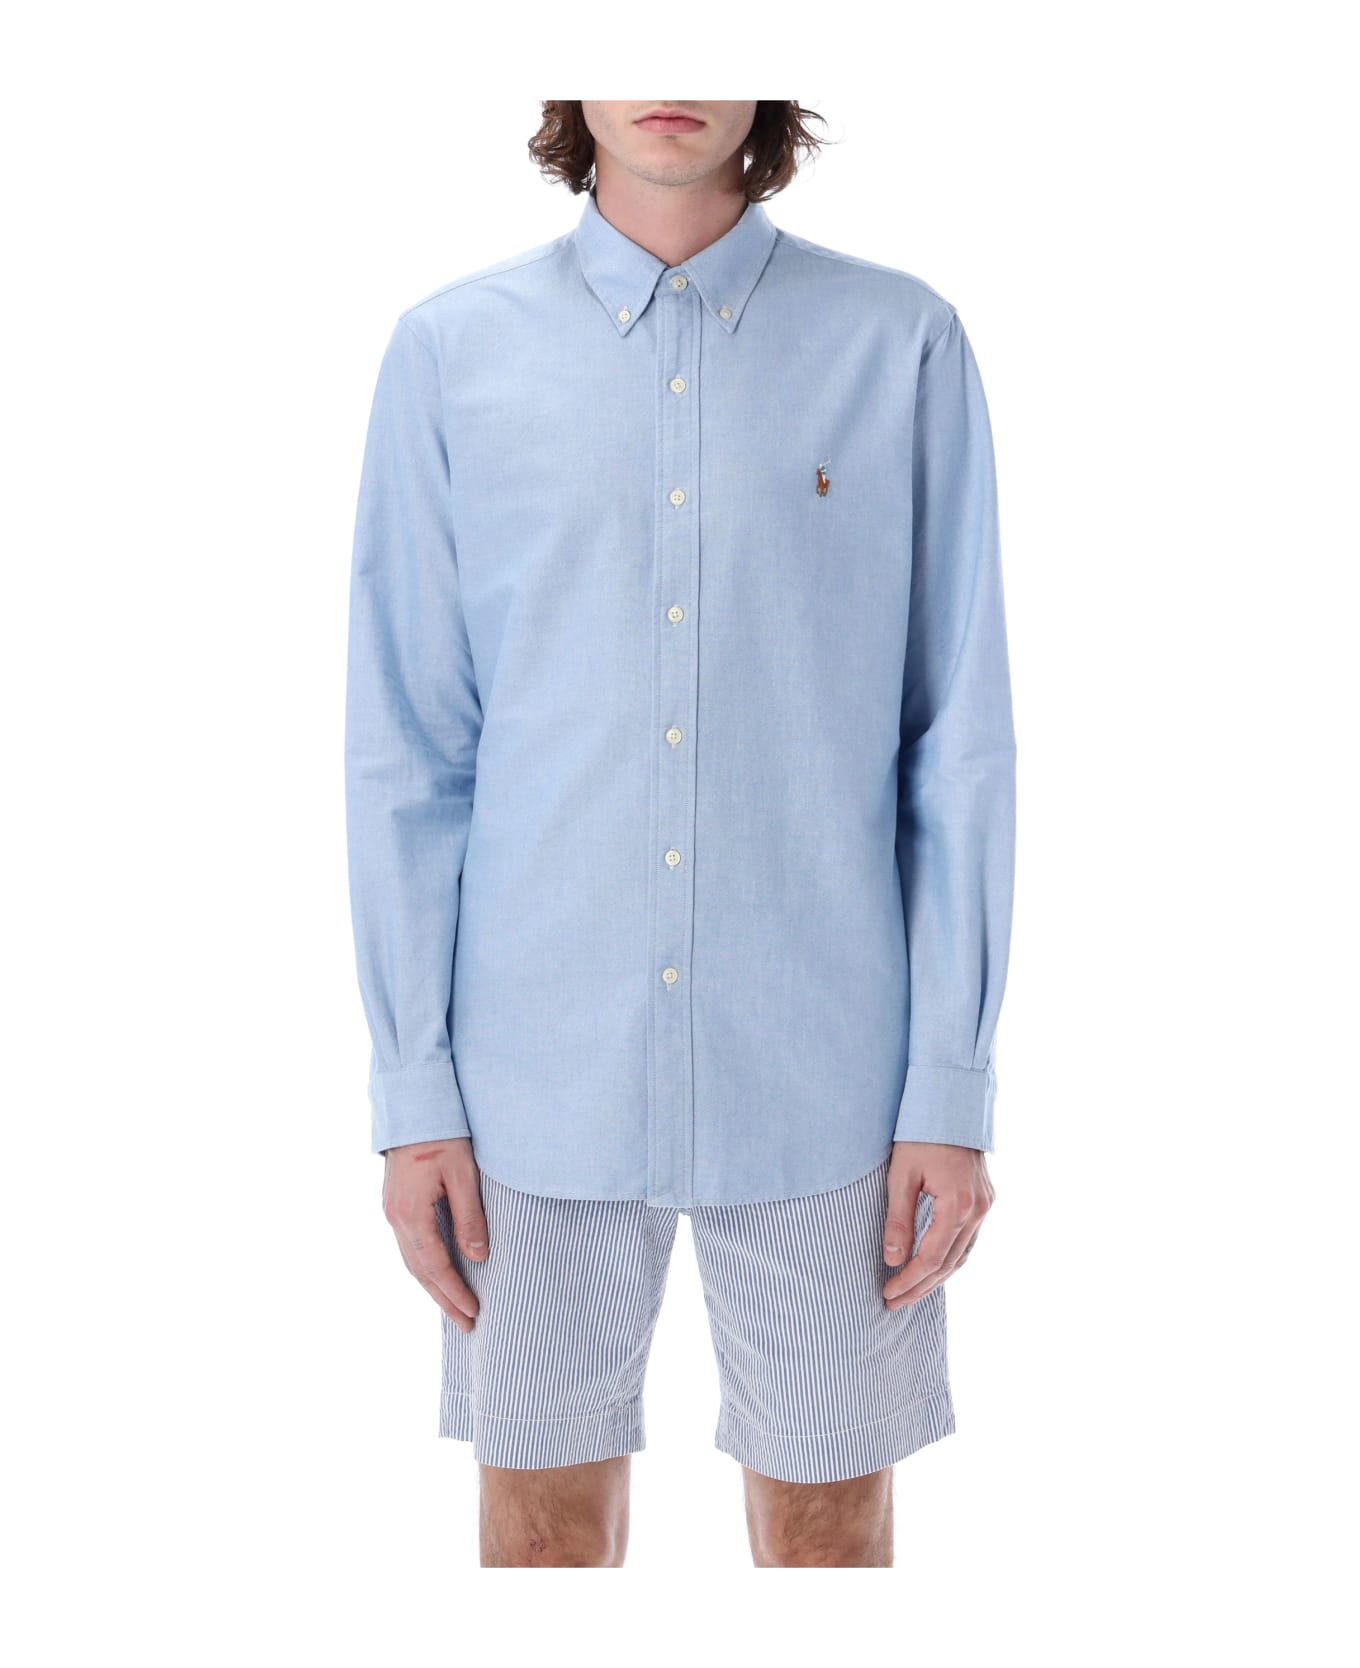 Polo Ralph Lauren Custom Fit Shirt - LIGHT BLUE